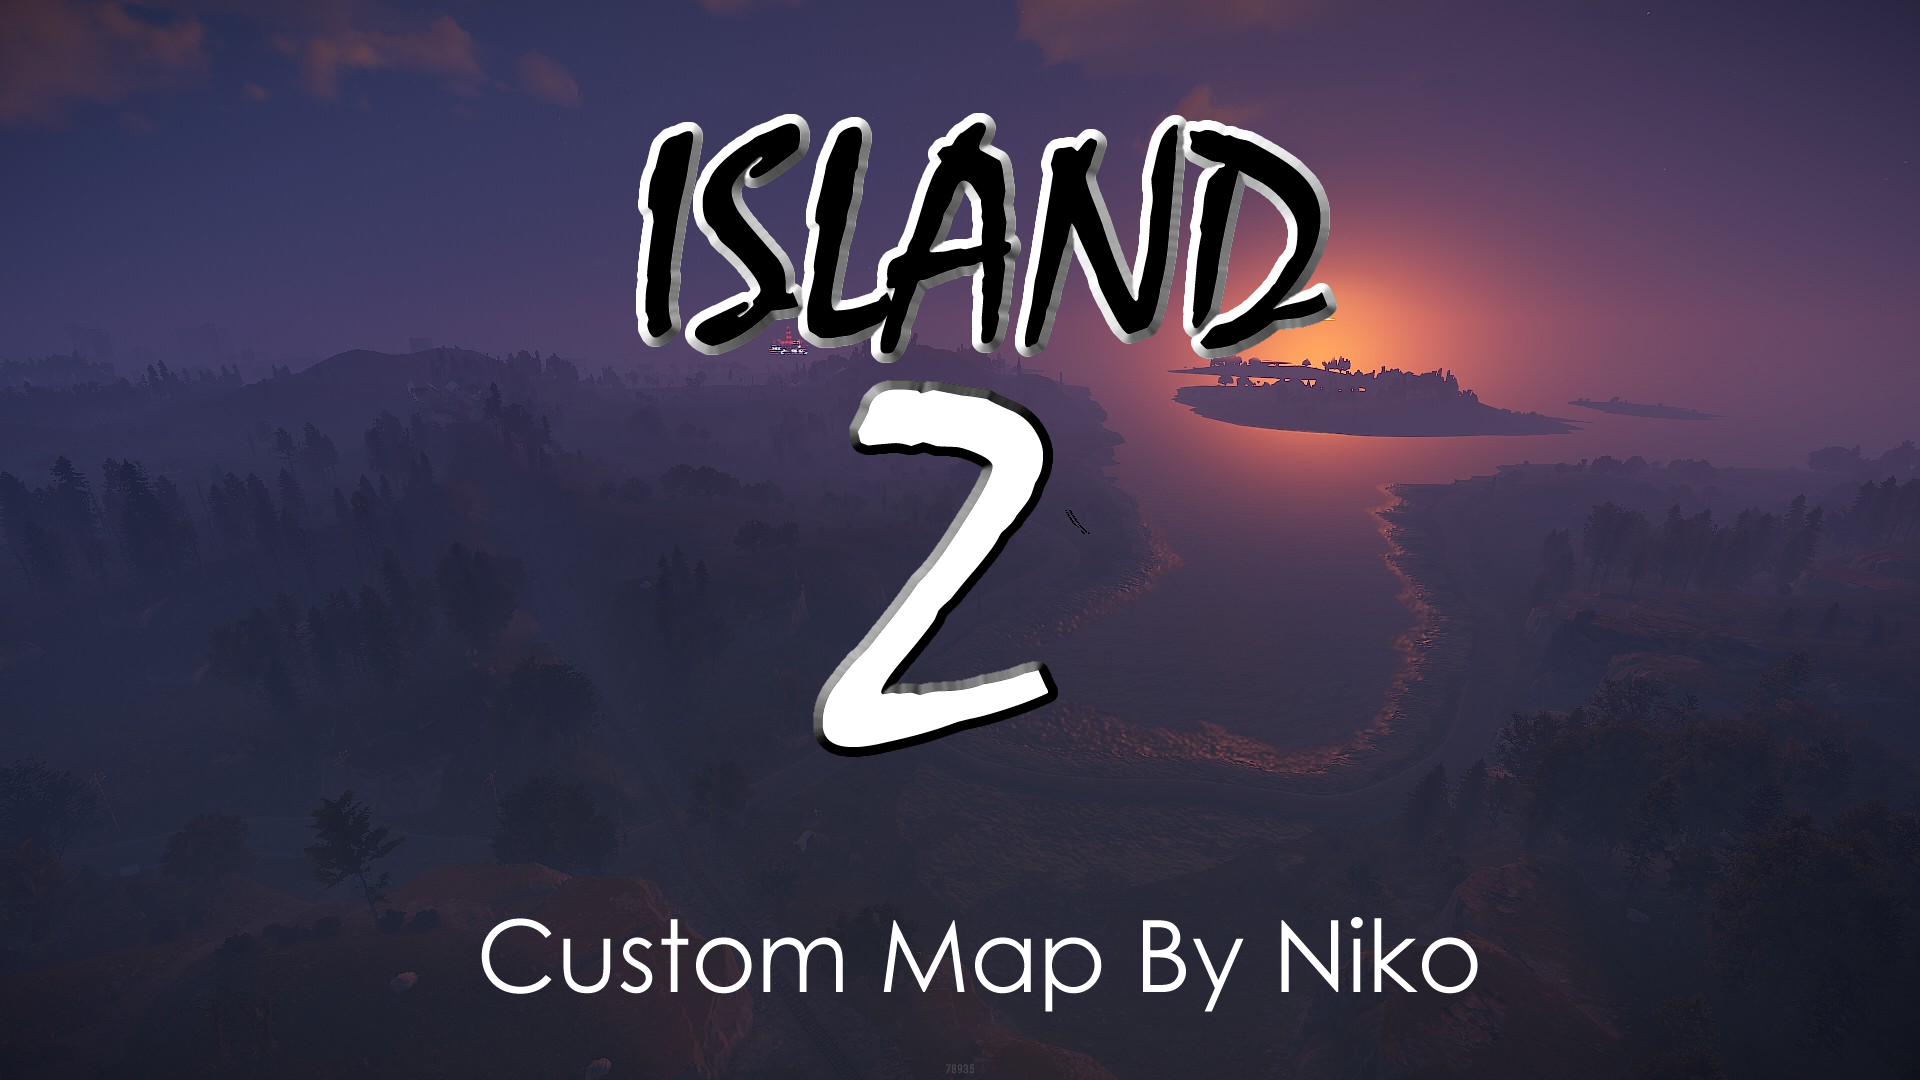 Island Z Custom Map by Niko